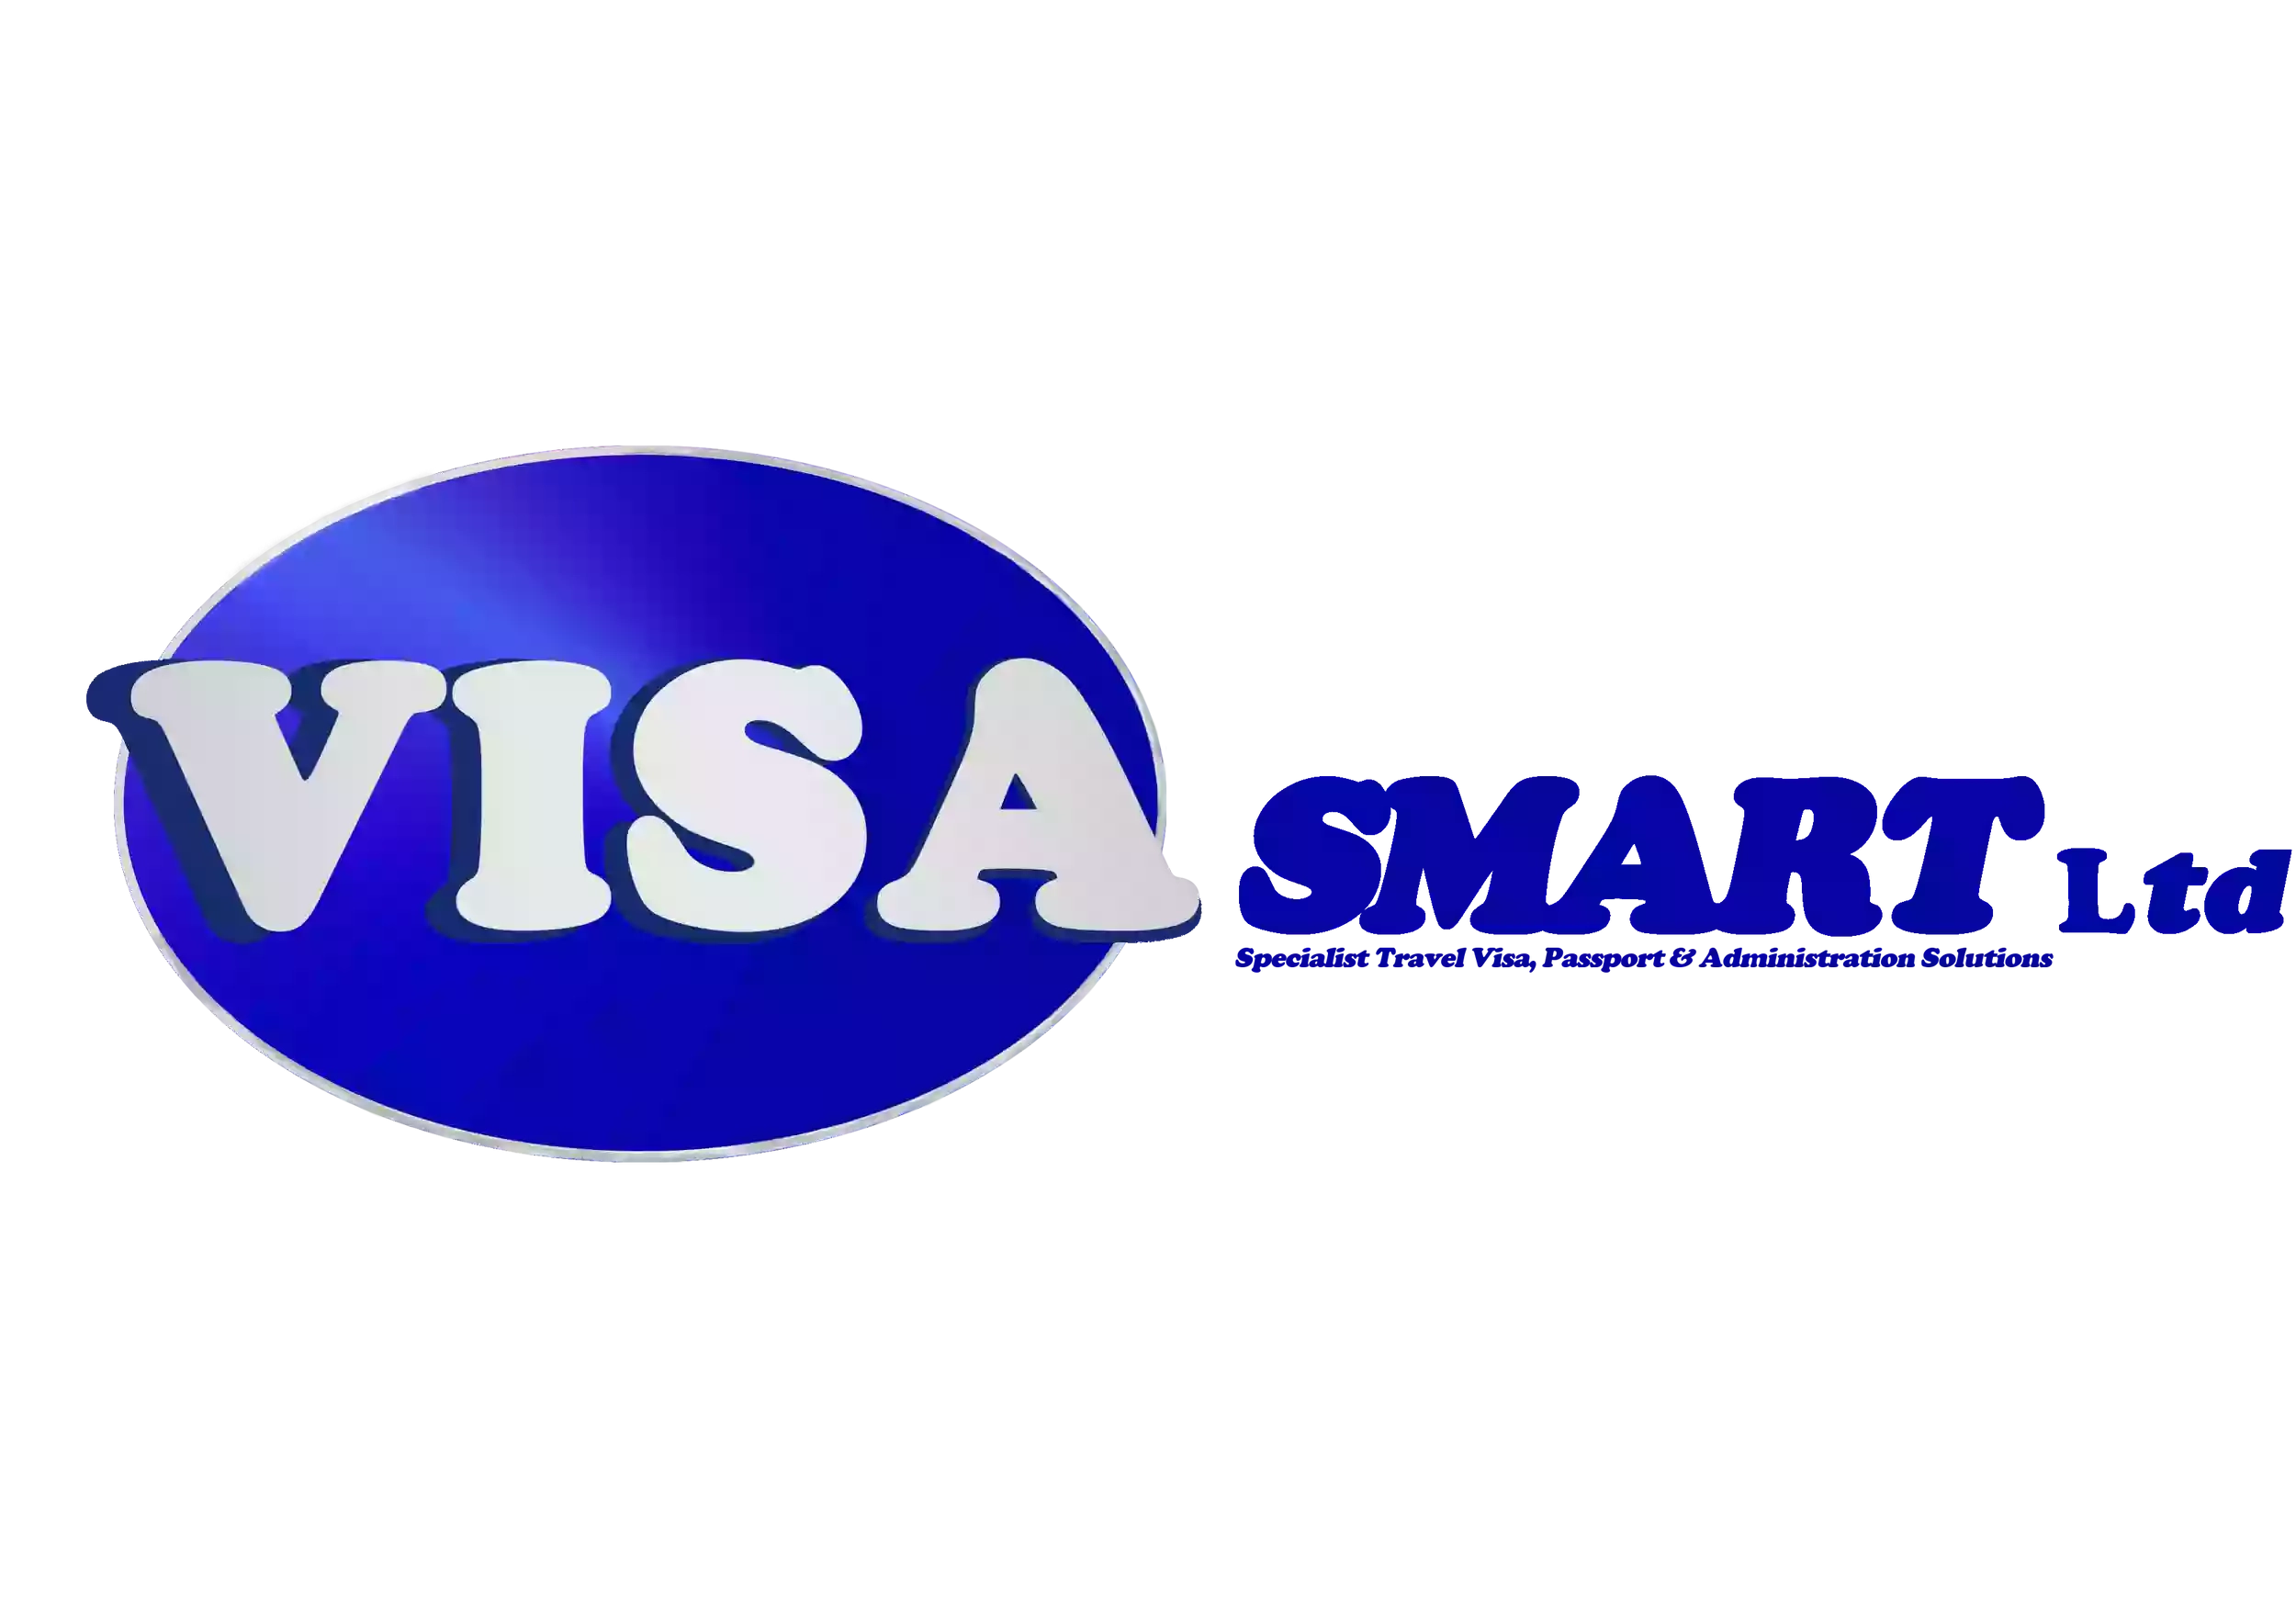 VisaSmart Travel Solutions Ltd